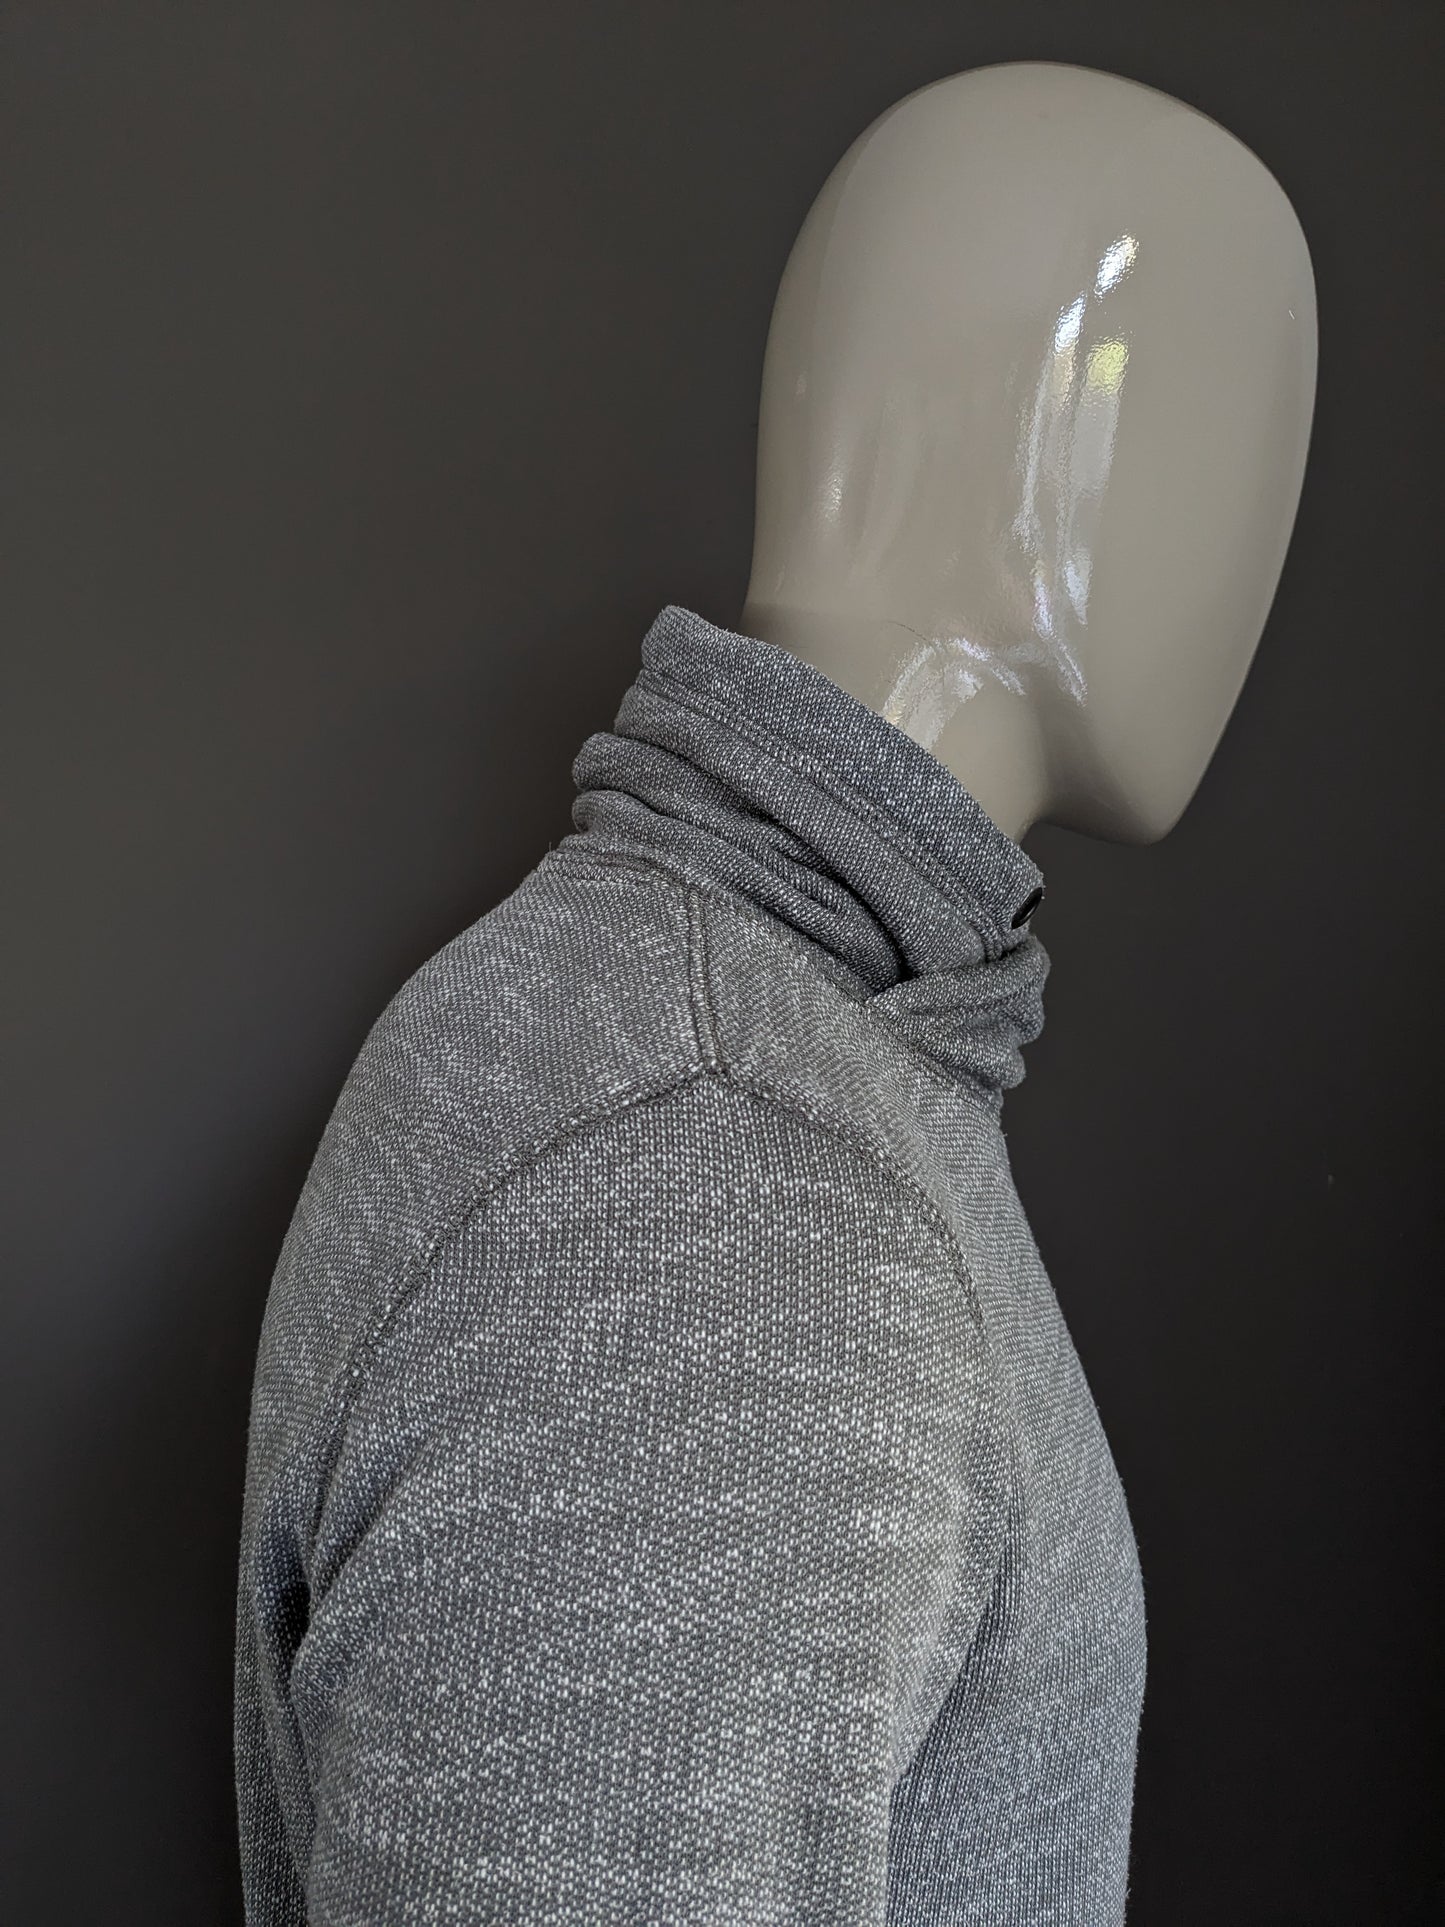 Suéter de espíritu con cuello de tortuga deportivo. Blanco gris mezclado. Talla L.